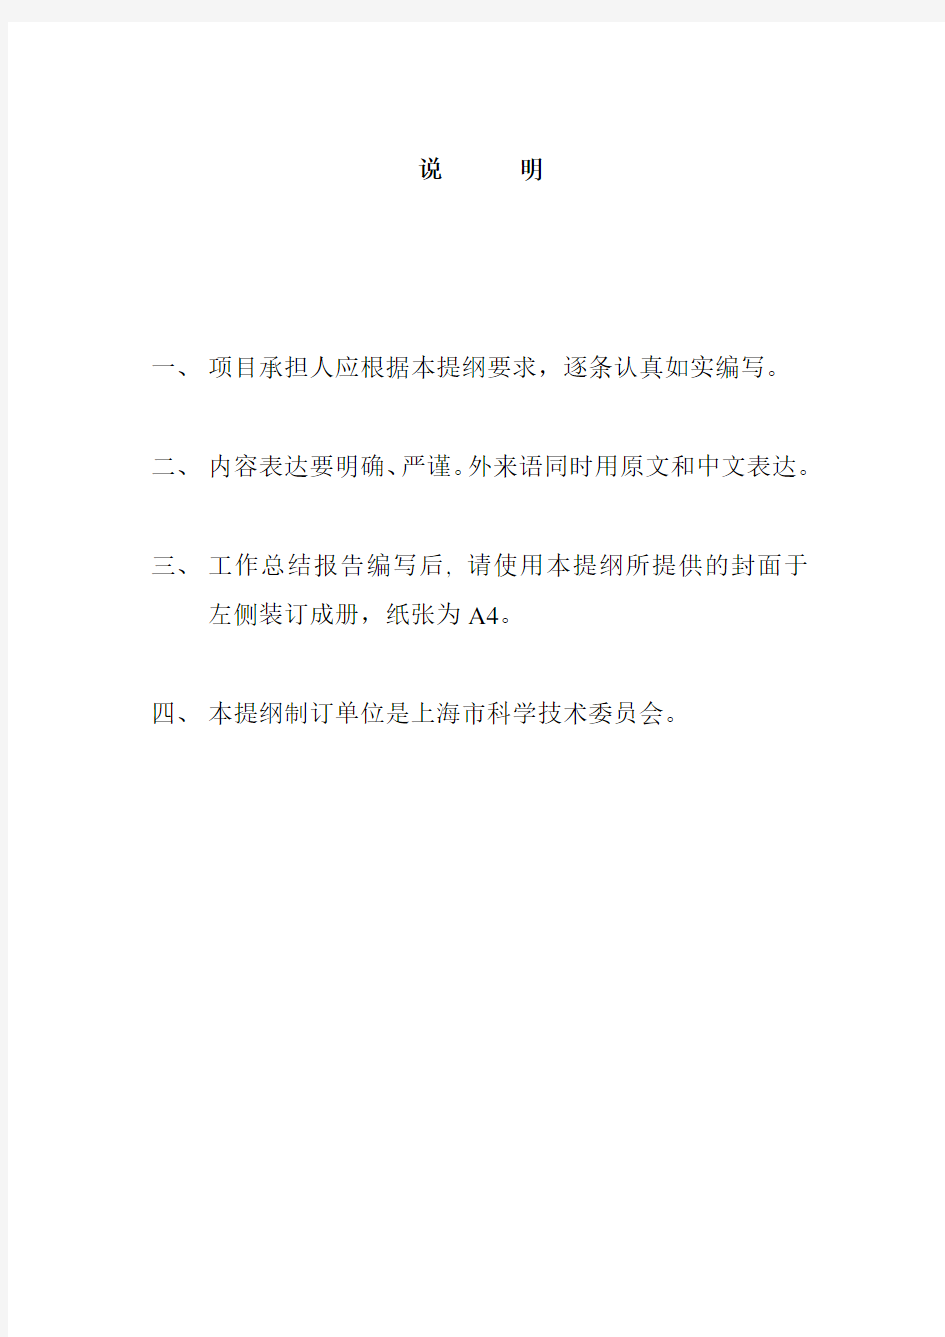 上海市科技人才计划项目验收总结报告模板(2019年版)